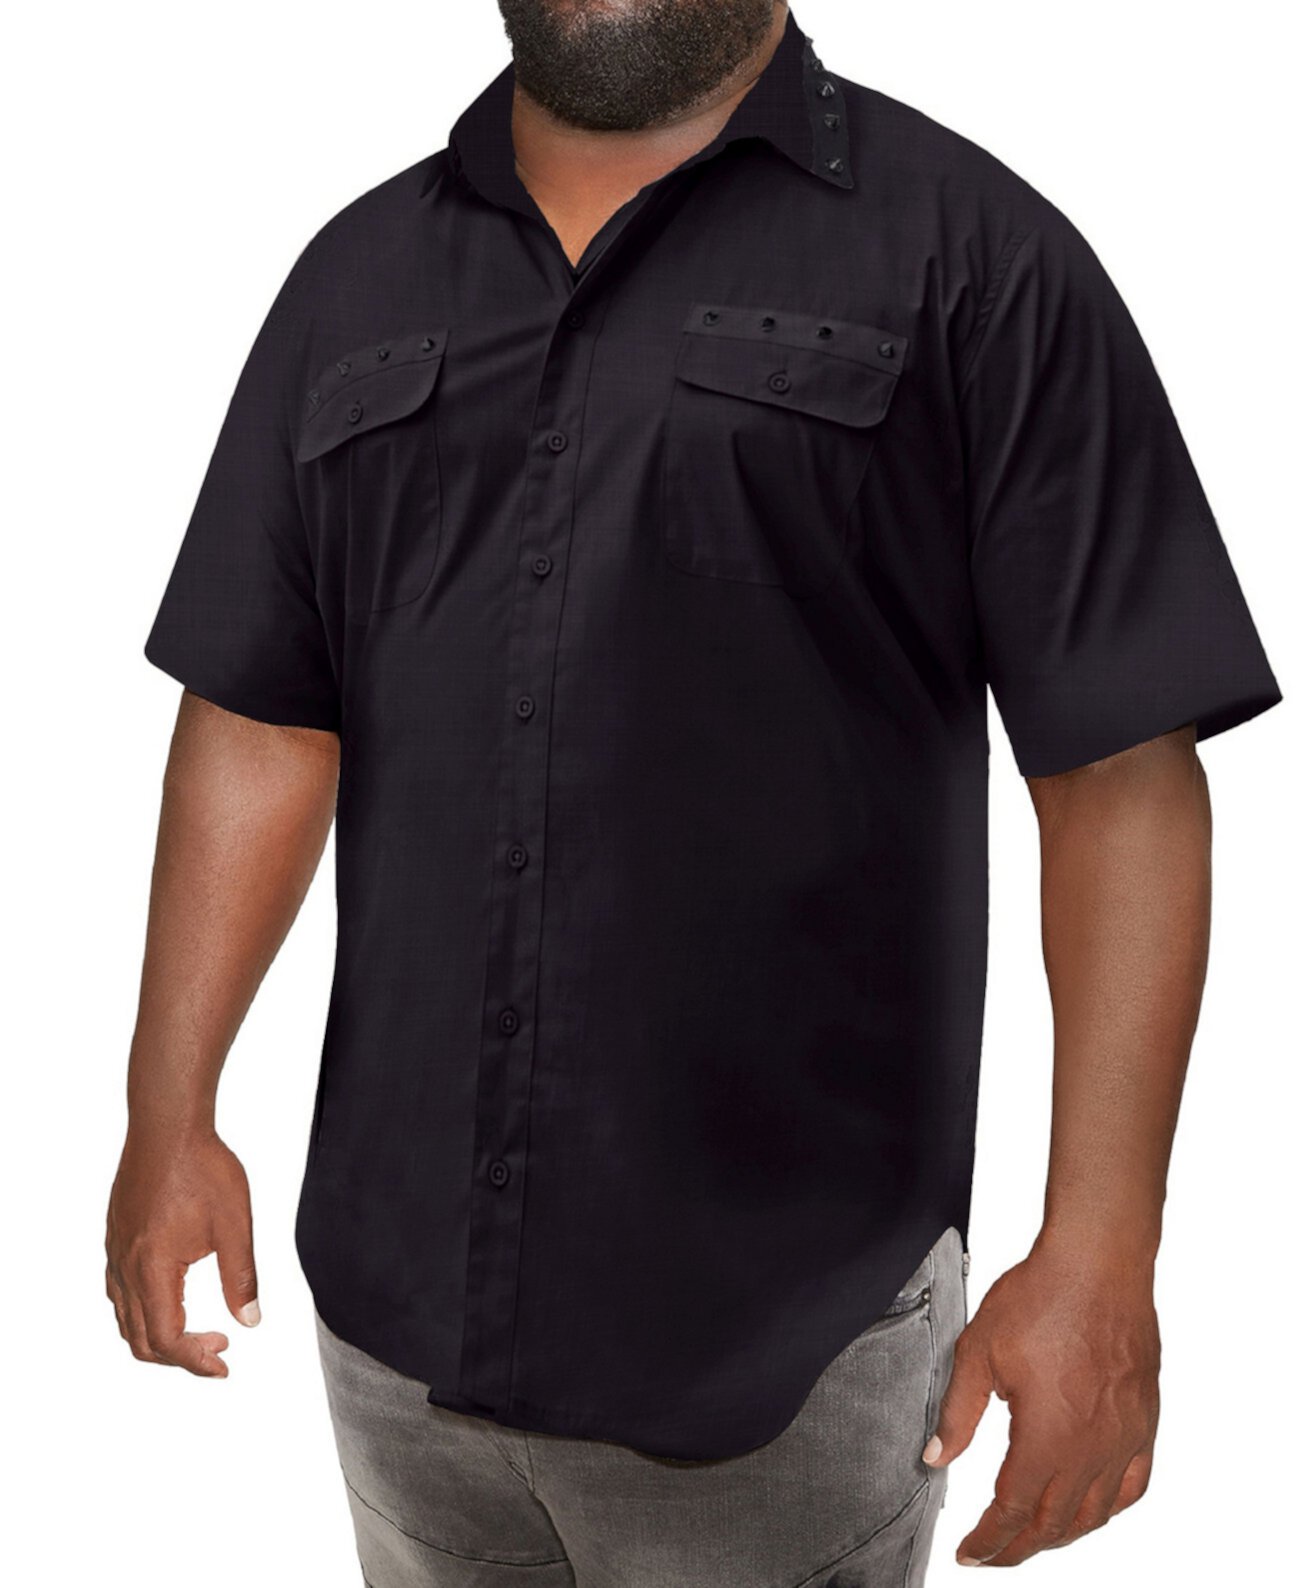 Мужская рубашка с короткими рукавами и отделкой большими и высокими шипами Mvp Collections Mvp Collections By Mo Vaughn Productions